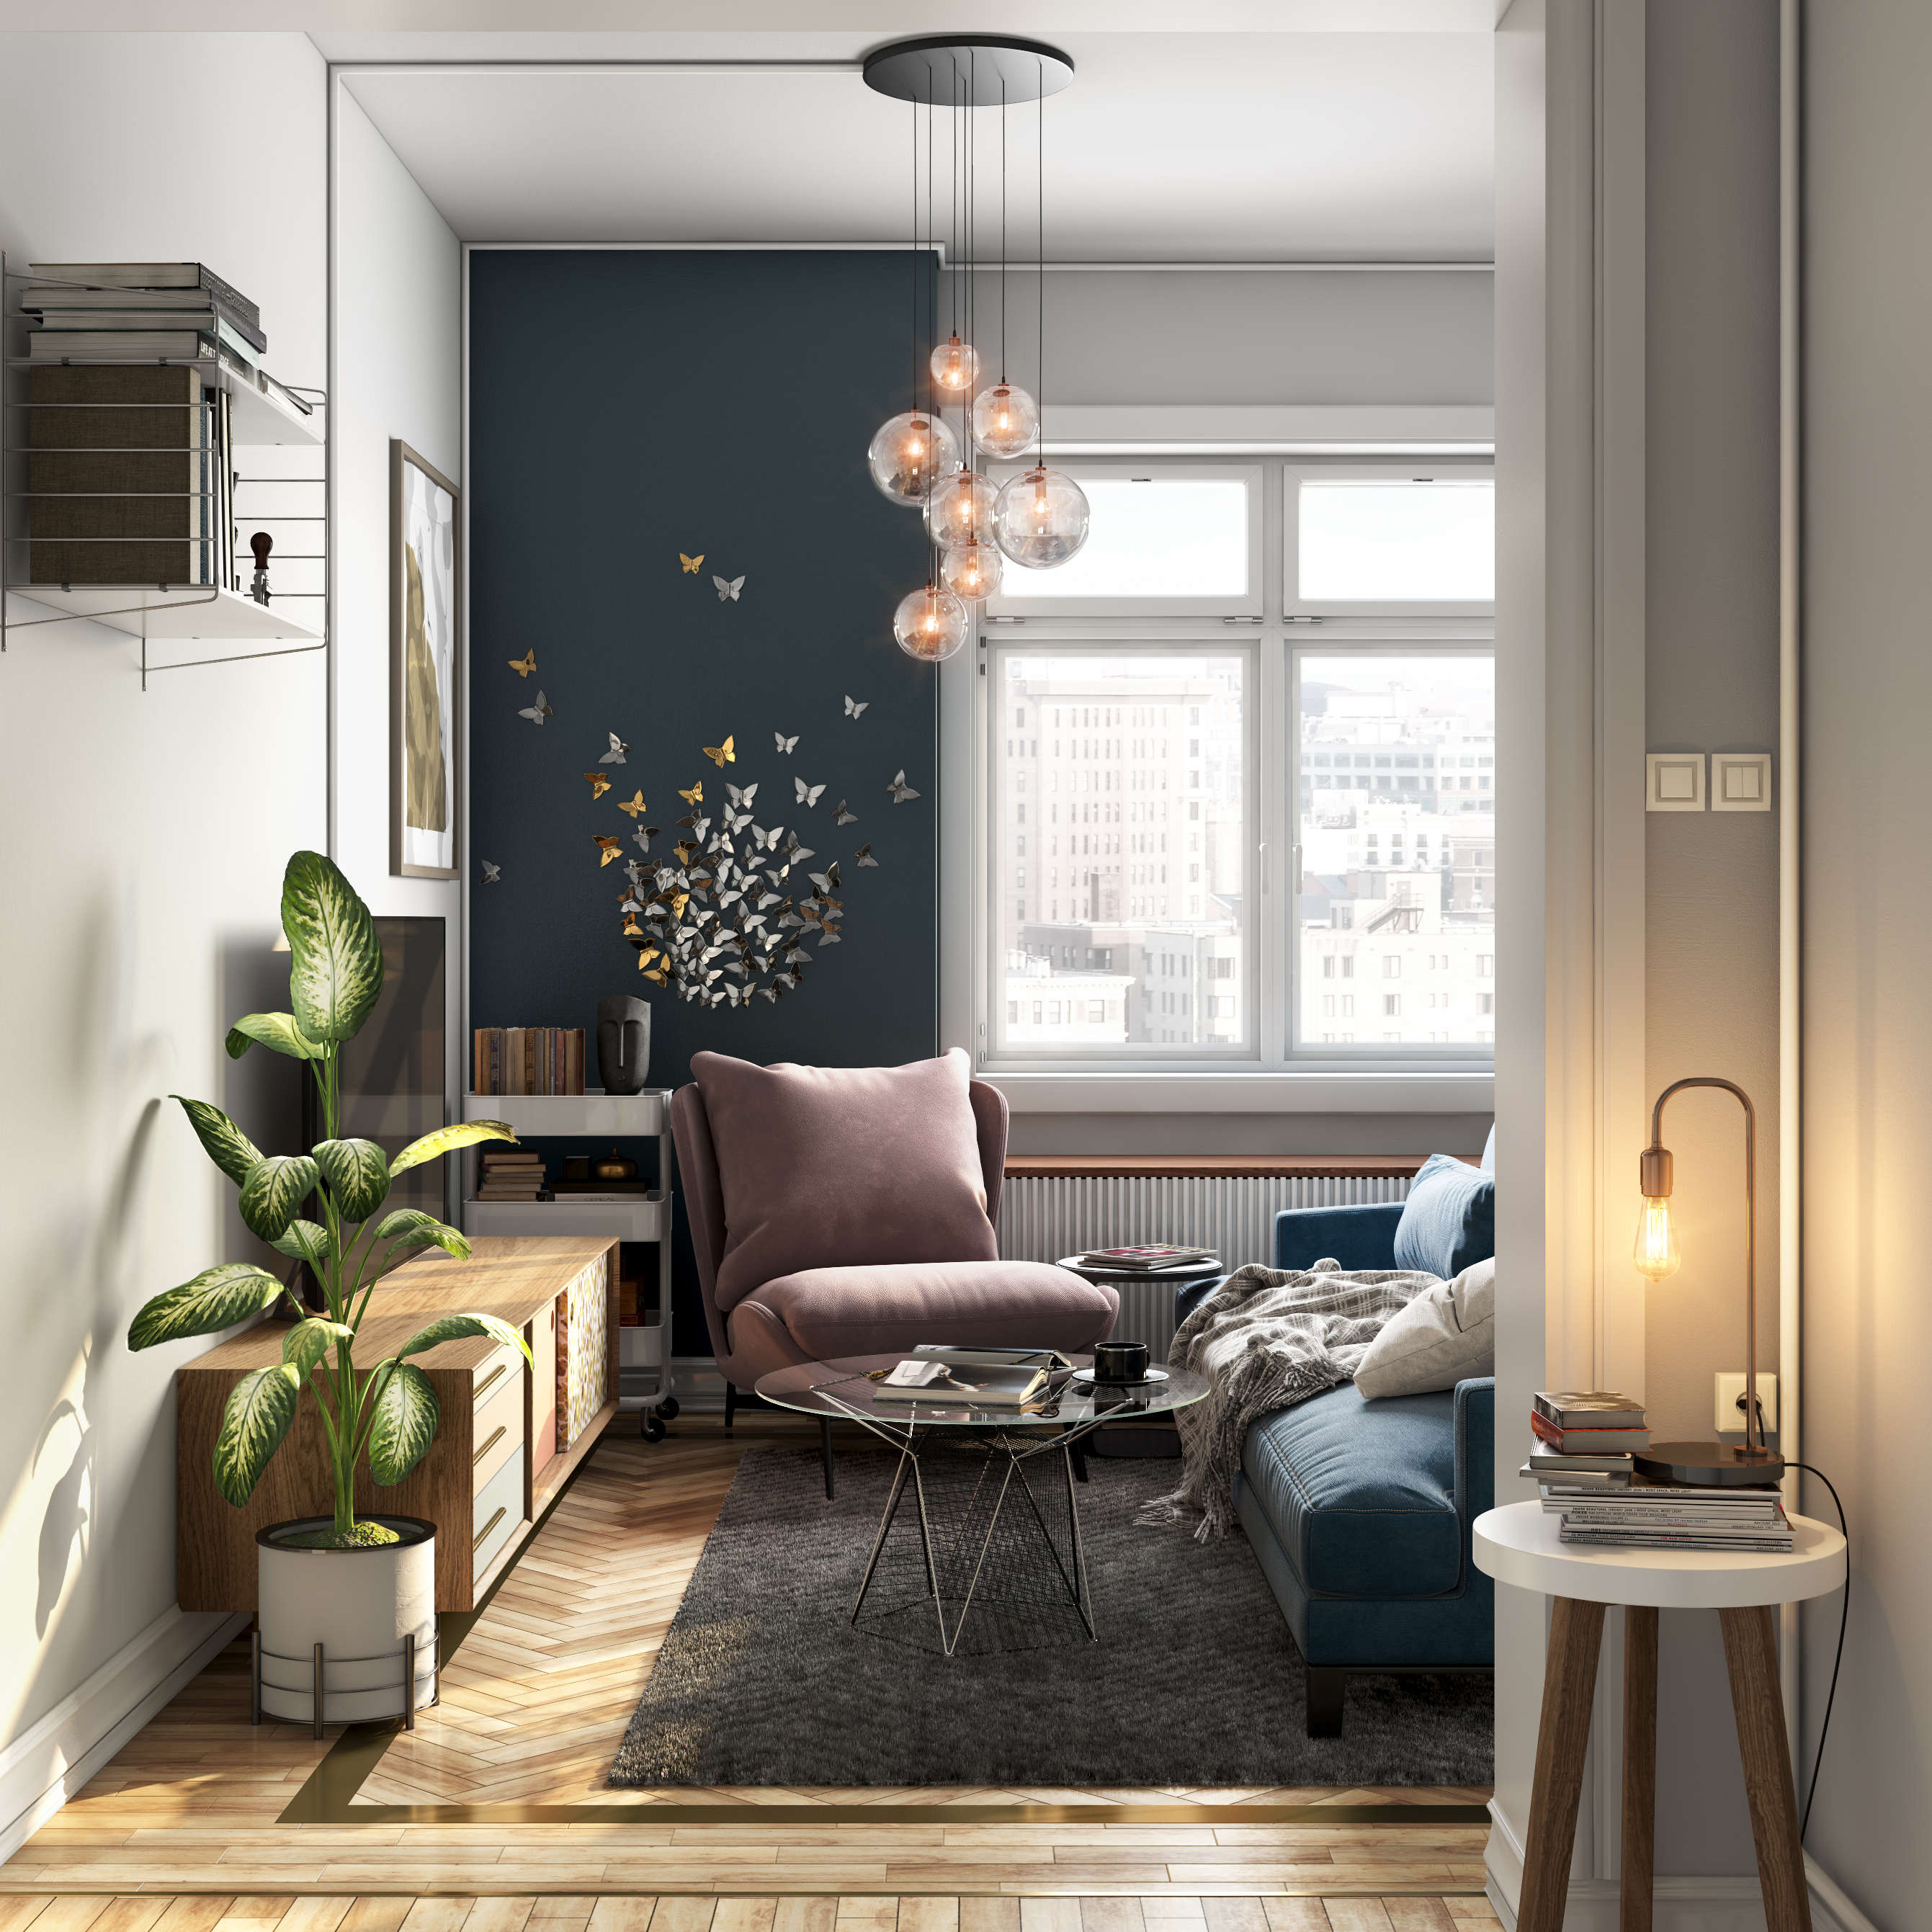 Contemporary Living Room Interior Design with Ornamental Light Fixture